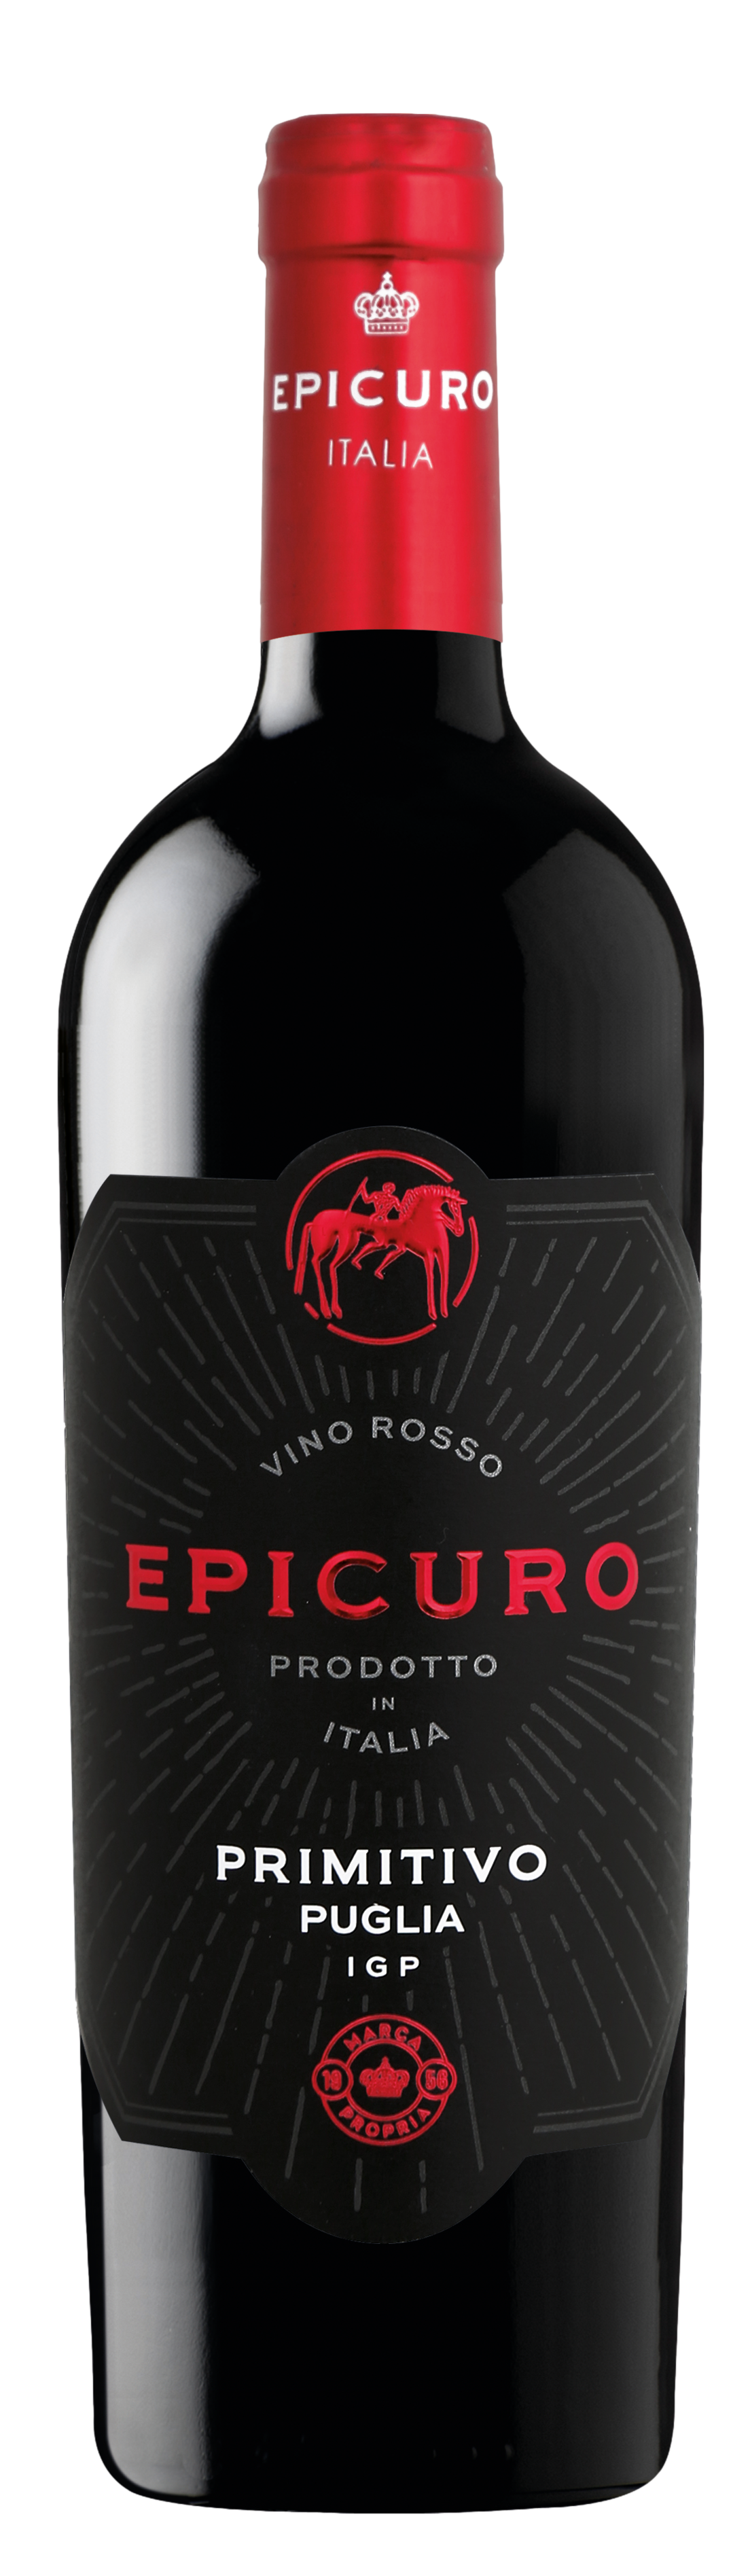 Epicuro Rotwein Probierpaket (6 x 0,75l) + VINOX Winecards